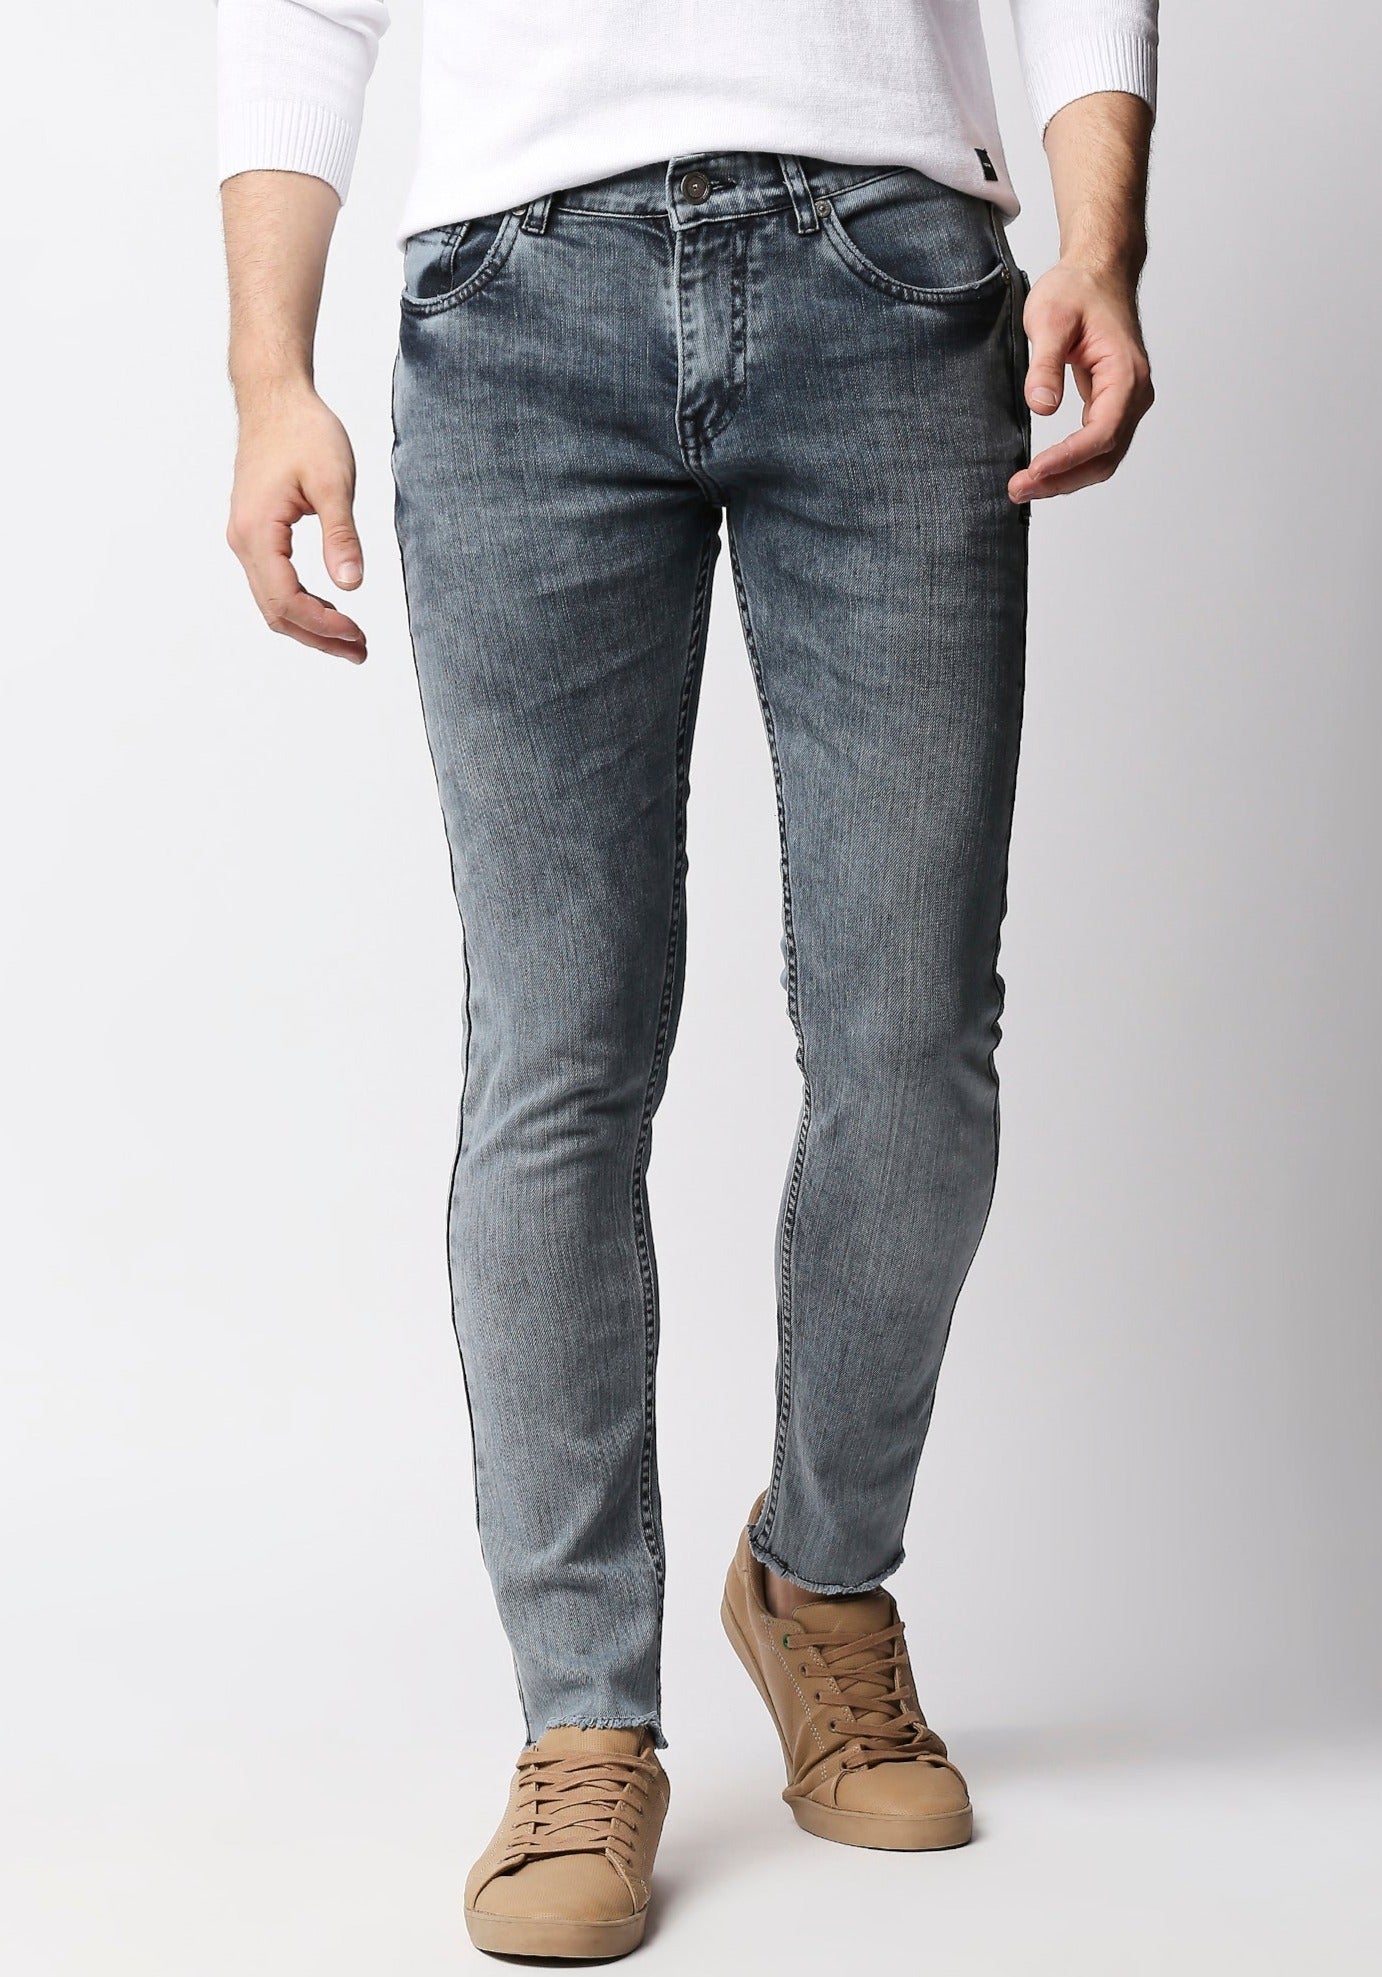 Fostino Grey Wash Jeans - Fostino - Jeans